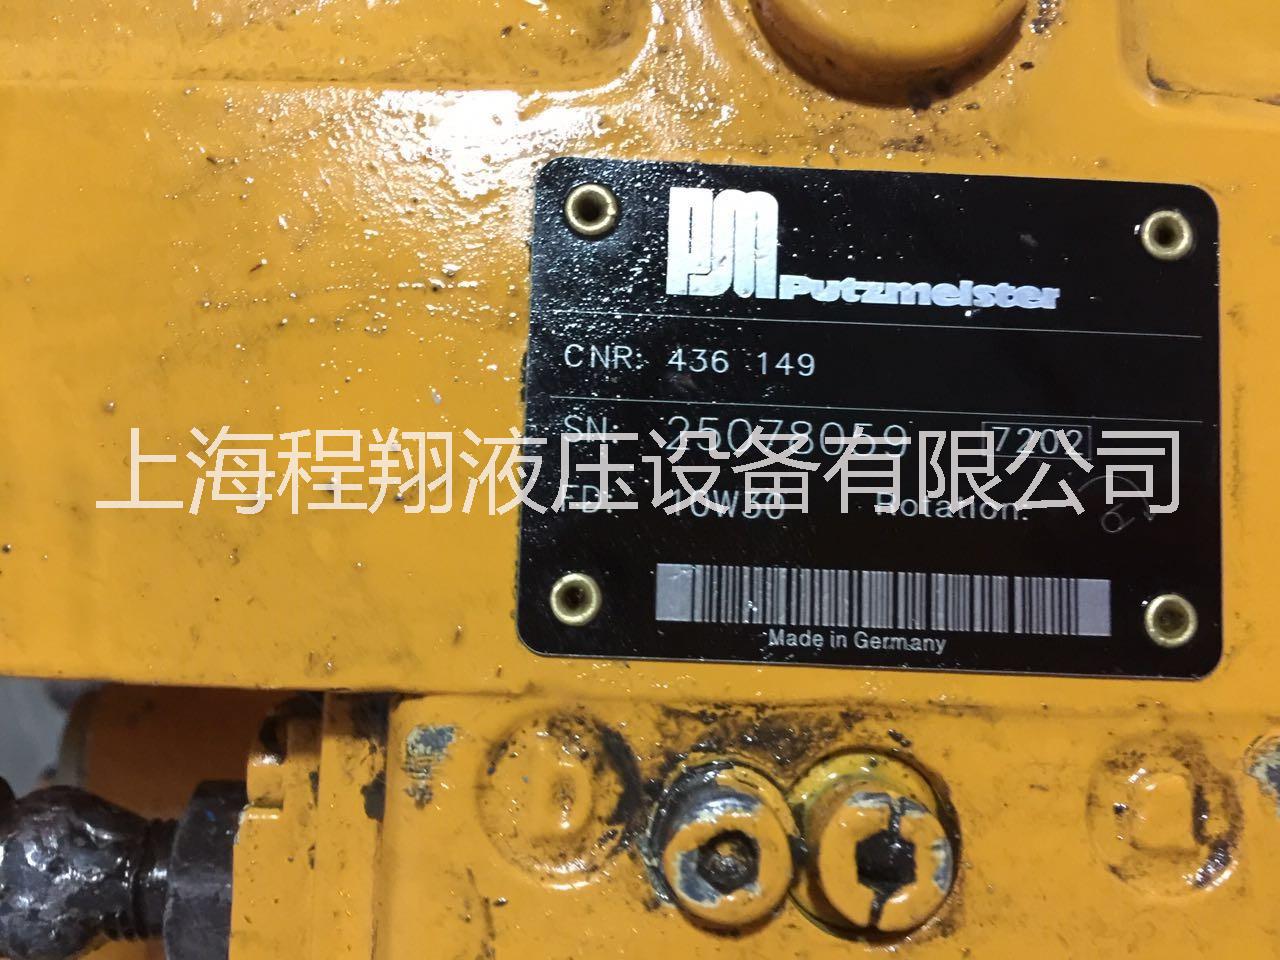 上海  厂家专业维修大象泵车PM-A4VG180液压泵维修 厂家维修大象泵车液压泵